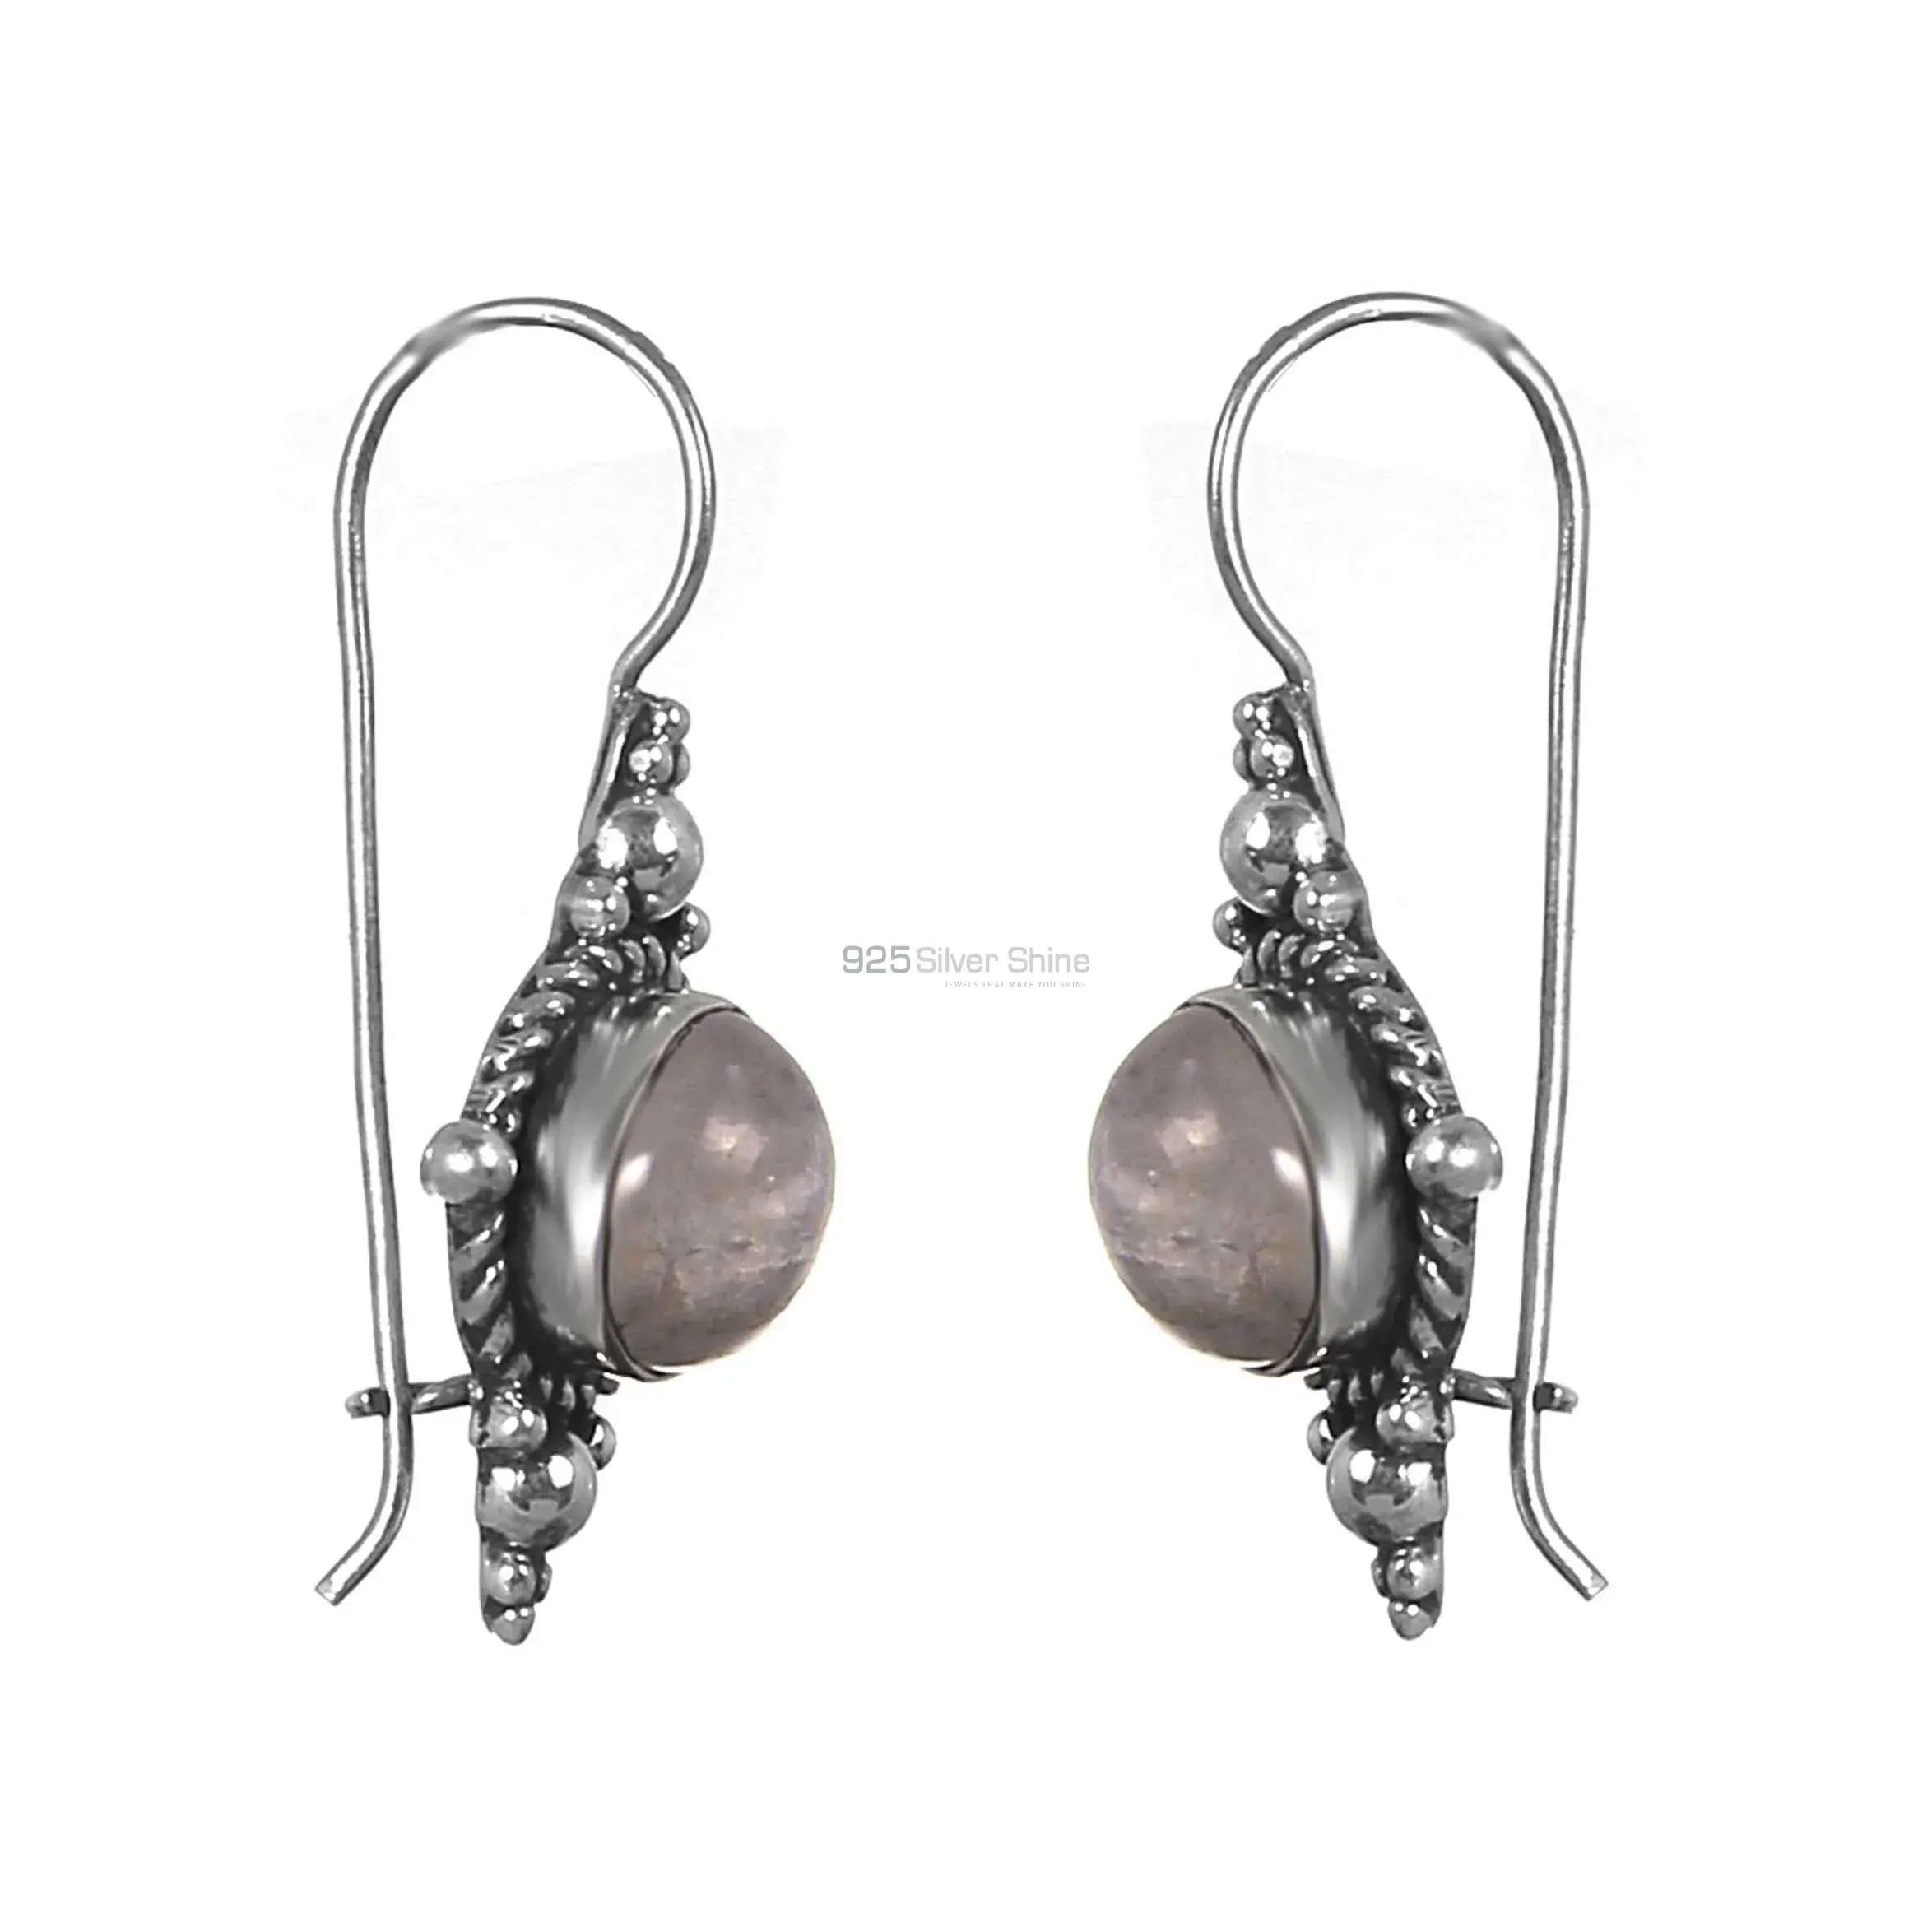 Wholesale Sterling Silver Earrings In Labradorite Gemstone Jewelry 925SE220_0